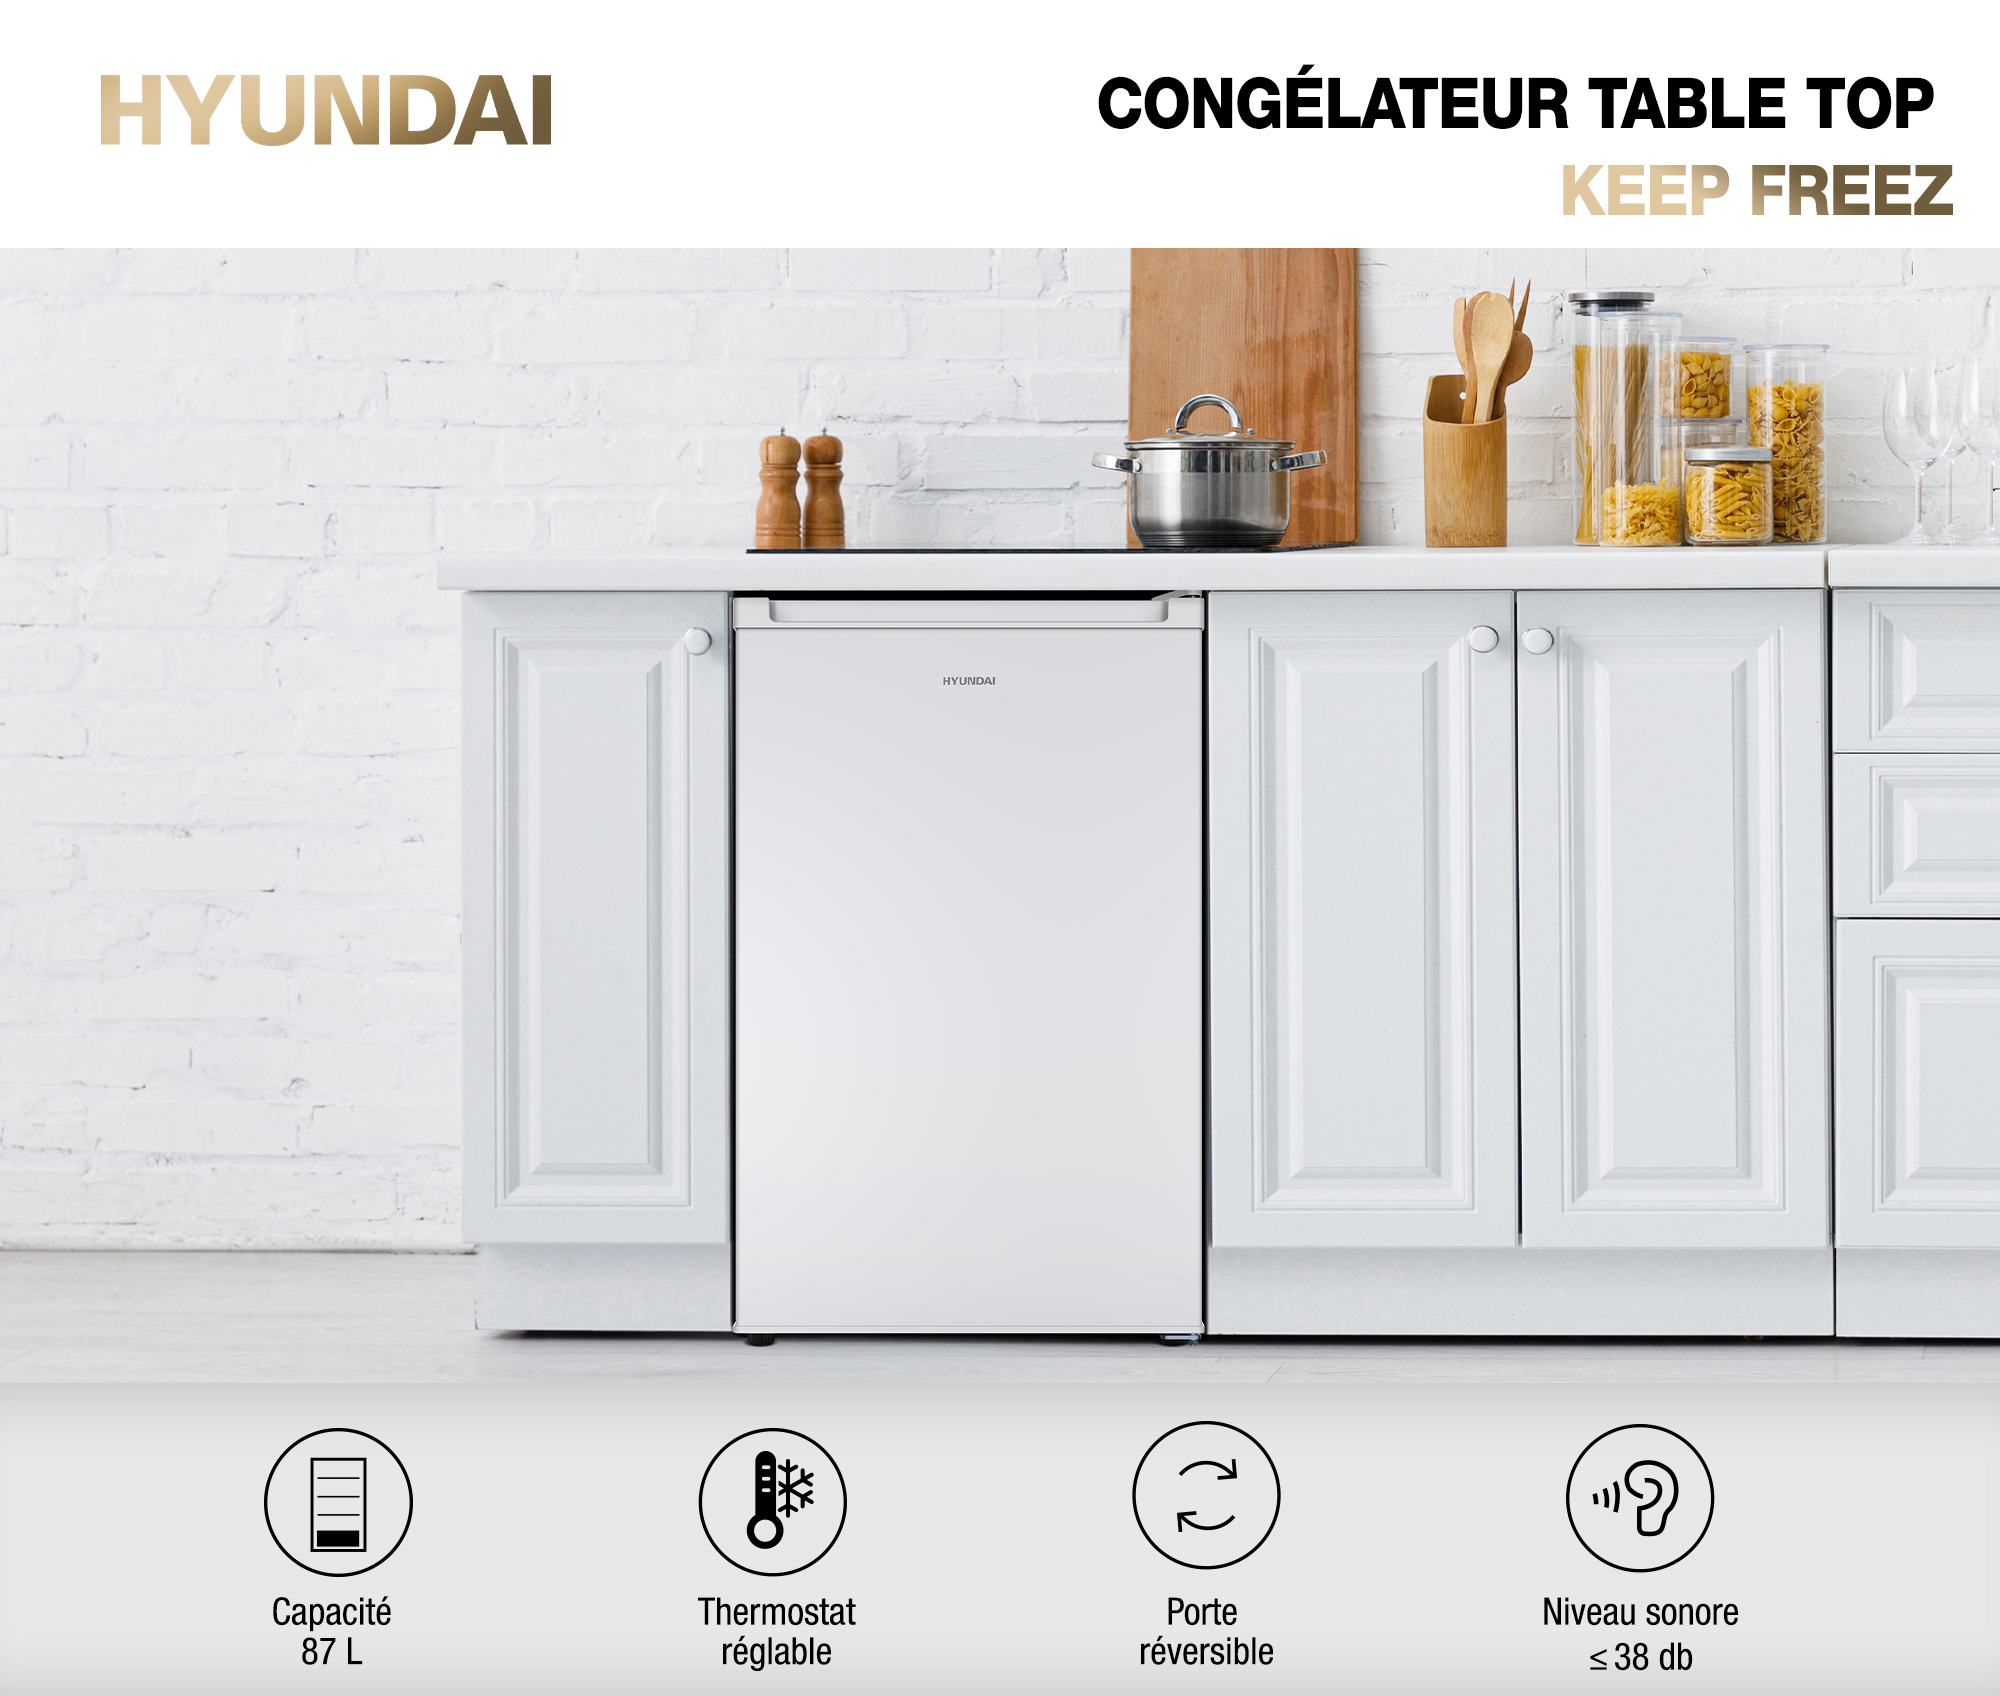 Congélateur top Hyundai - Congélateur 4* - 87L - 3 bacs Congélation :  3,5kg/18h pieds ajustables